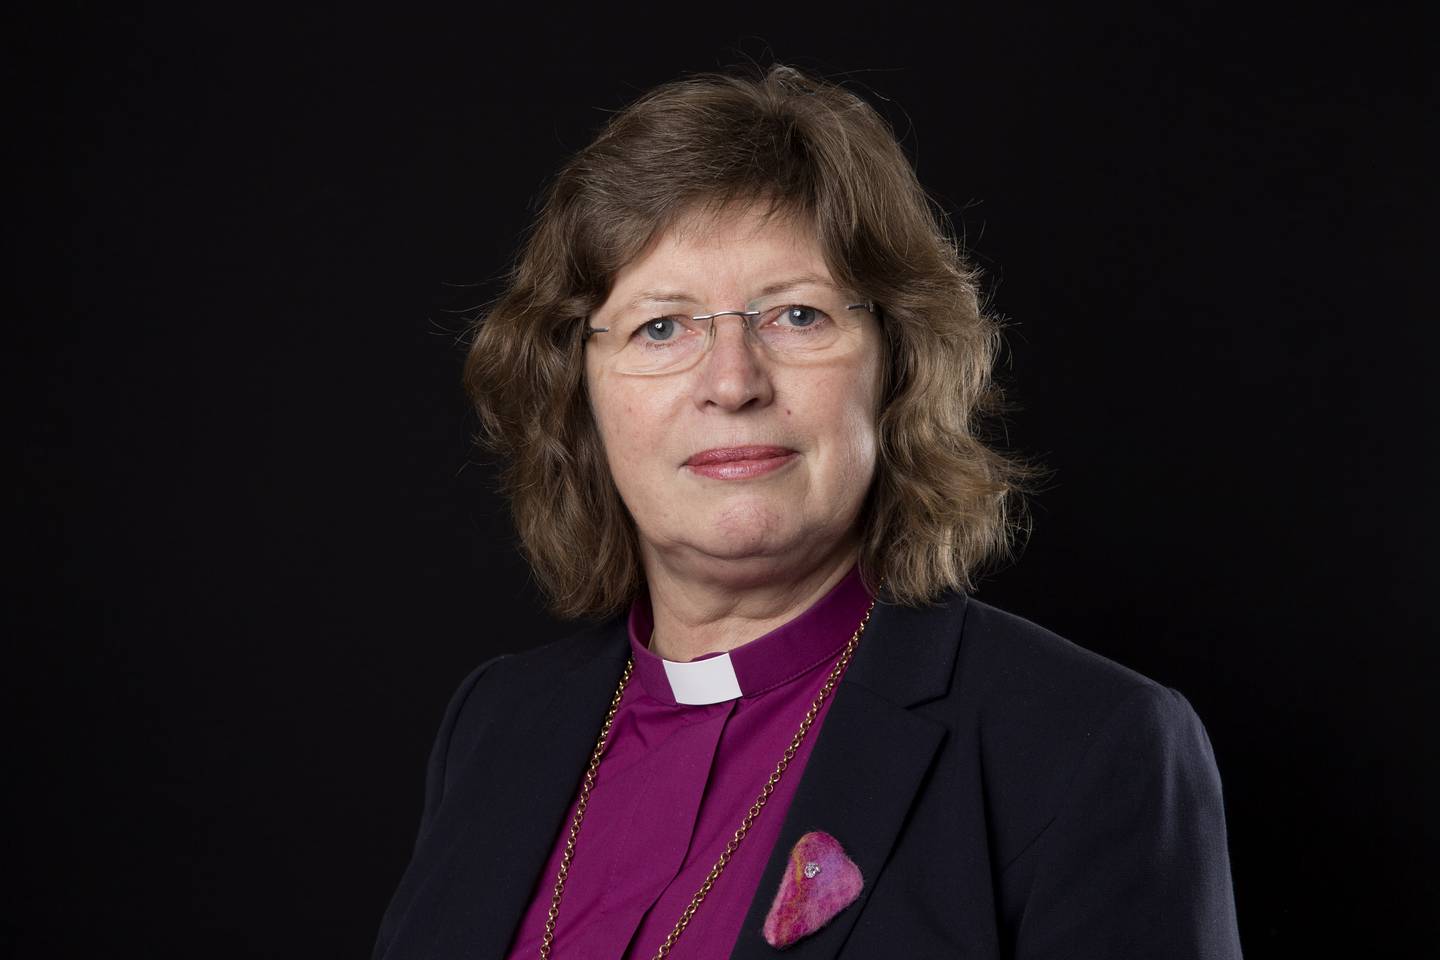 SPESIELT: For biskop Ingeborg Midttømme har bibelverset "Frykt ikke" betydd mye for hennes kall til prestetjeneste.